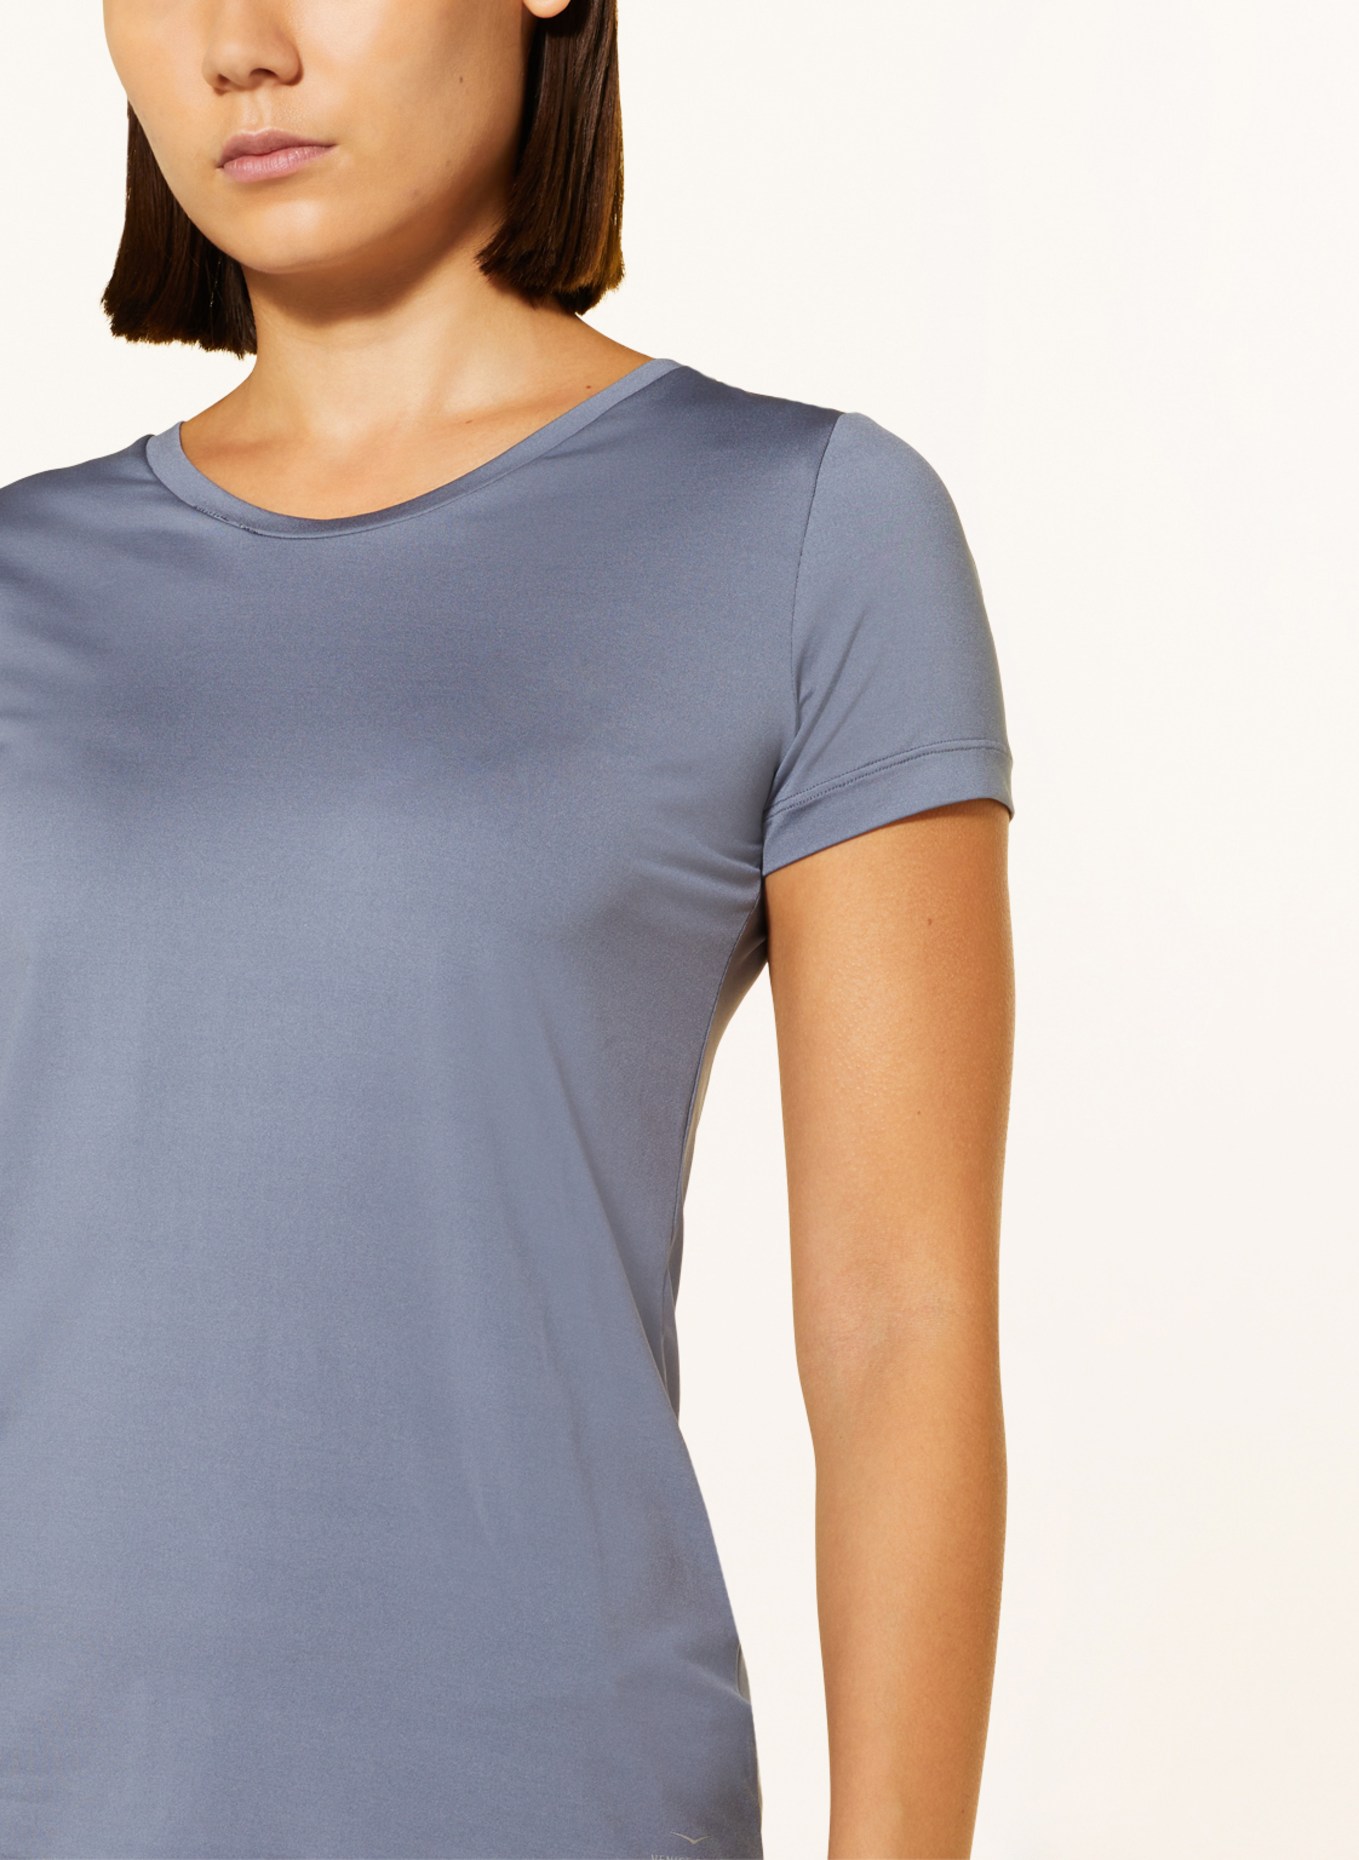 VENICE BEACH T-shirt DEANNA, Color: BLUE GRAY (Image 4)